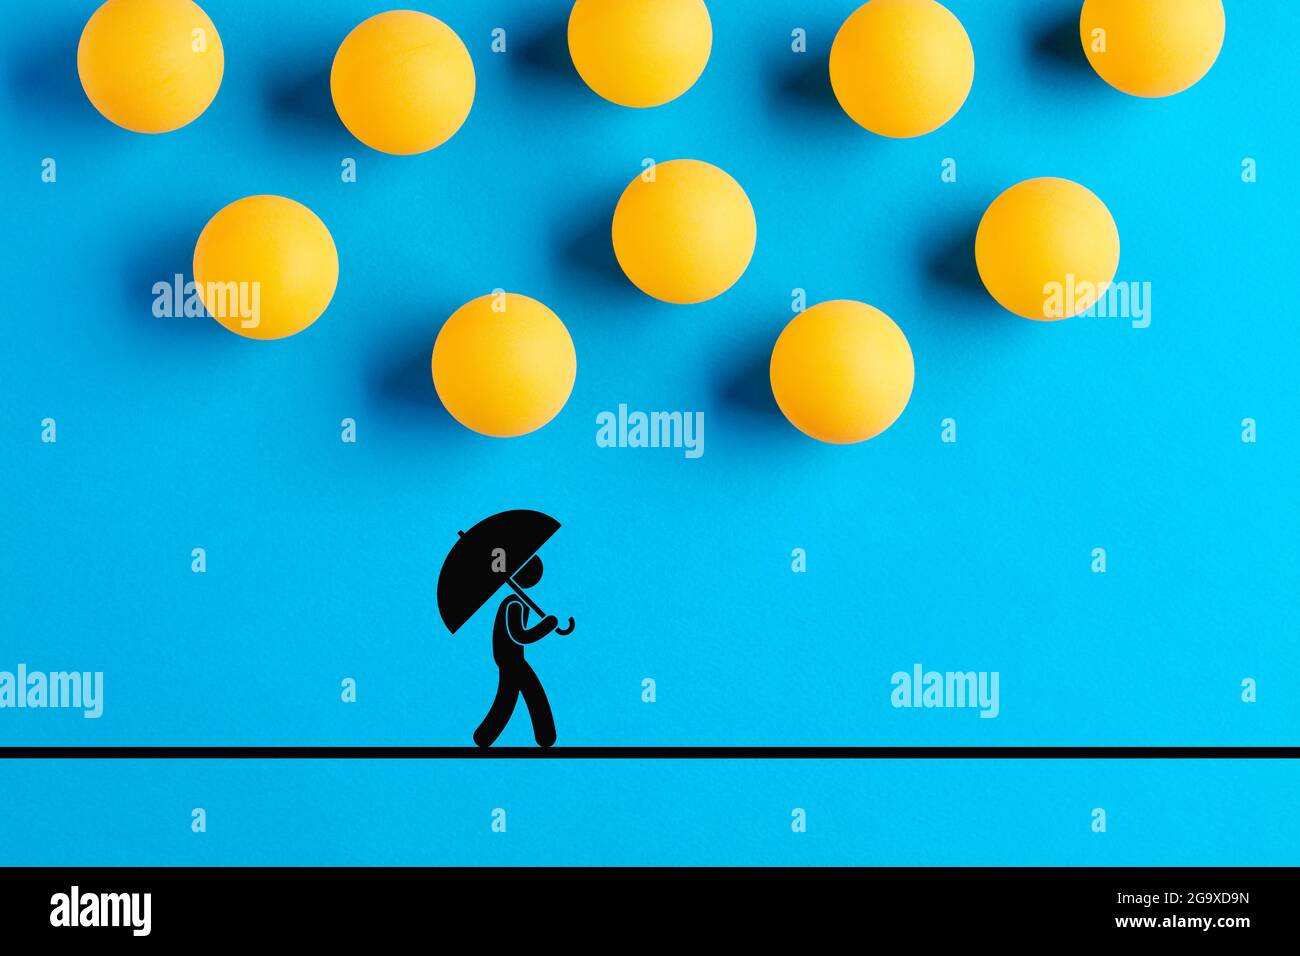 Les balles de tennis de table conçues comme des gouttes de pluie tombent sur l'icône d'un homme marchant avec un parapluie. Catastrophe, malchance, accident, risque ou danger concep Banque D'Images